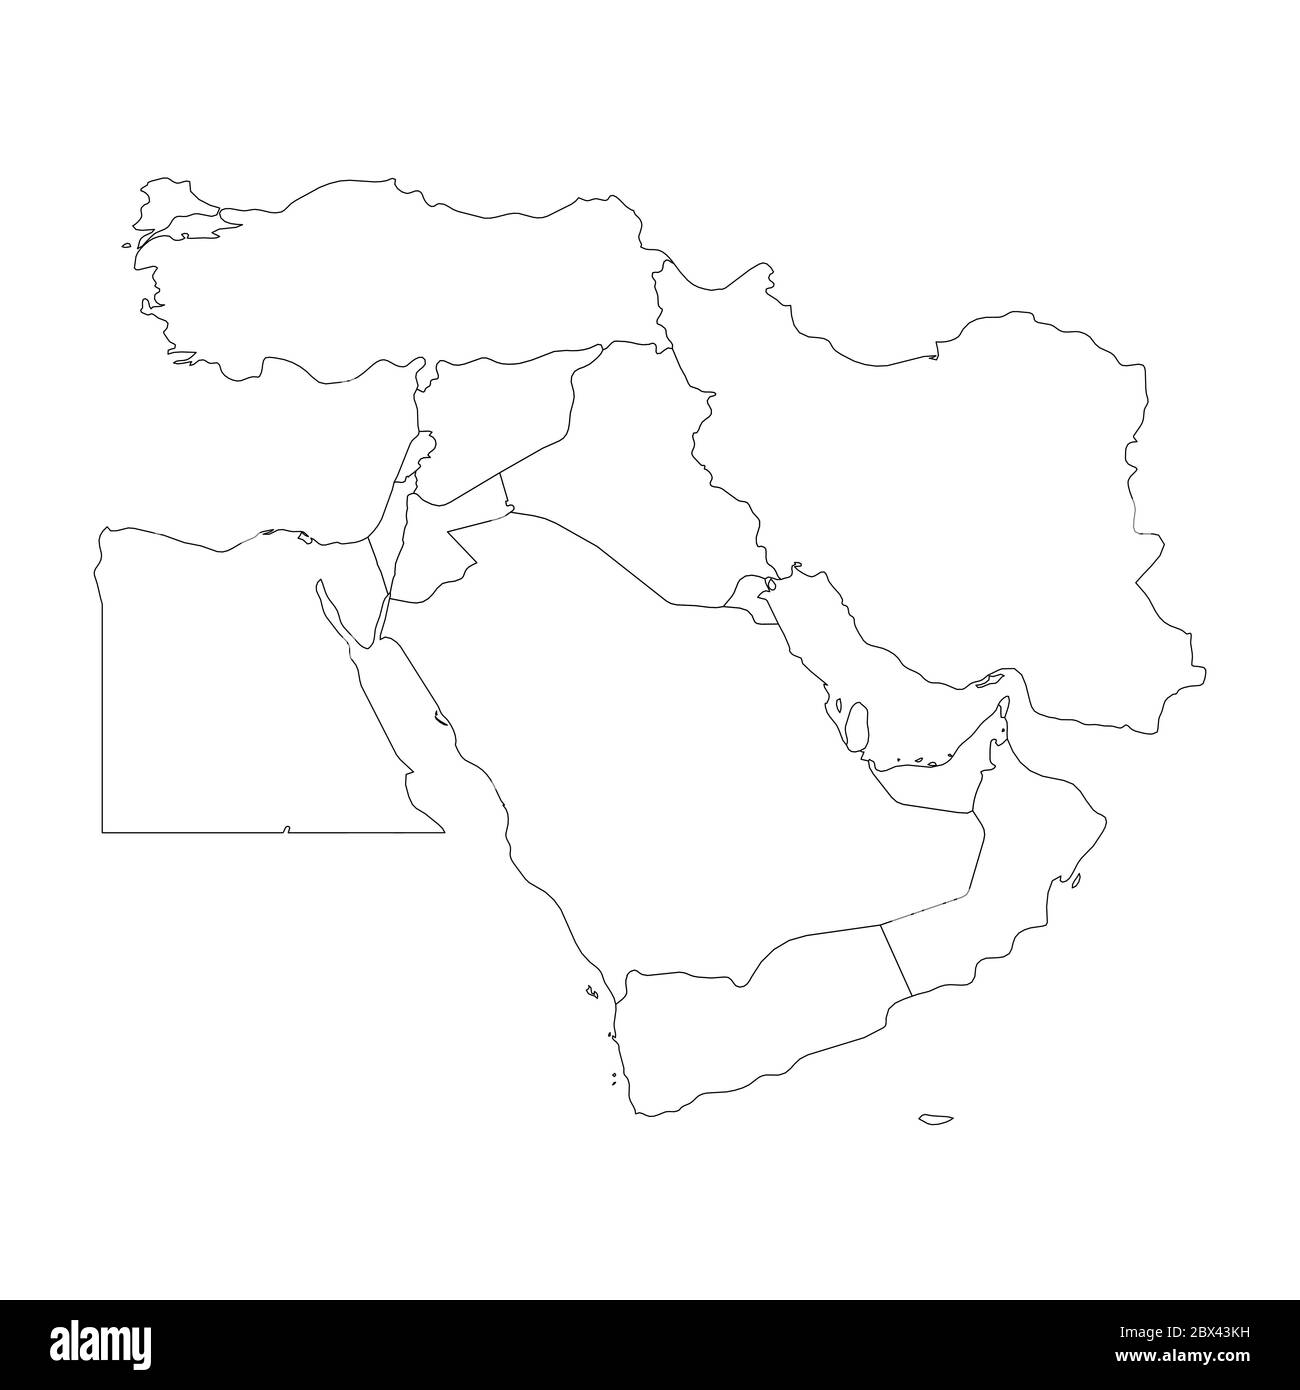 Mappa vuota del Medio Oriente o del Vicino Oriente. Semplice immagine vettoriale a profilo piatto. Illustrazione Vettoriale